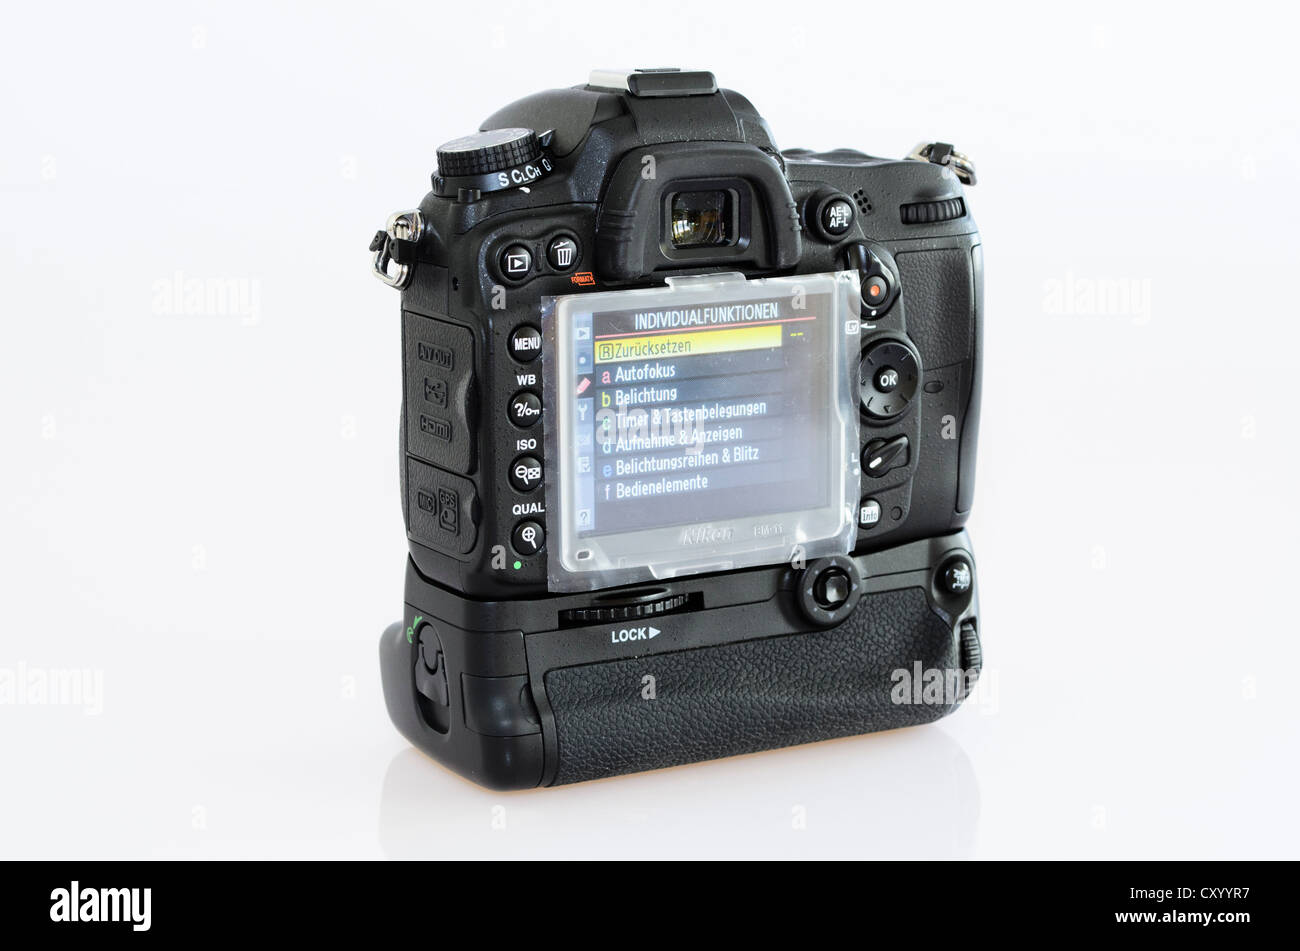 Nikon d7000 immagini e fotografie stock ad alta risoluzione - Alamy